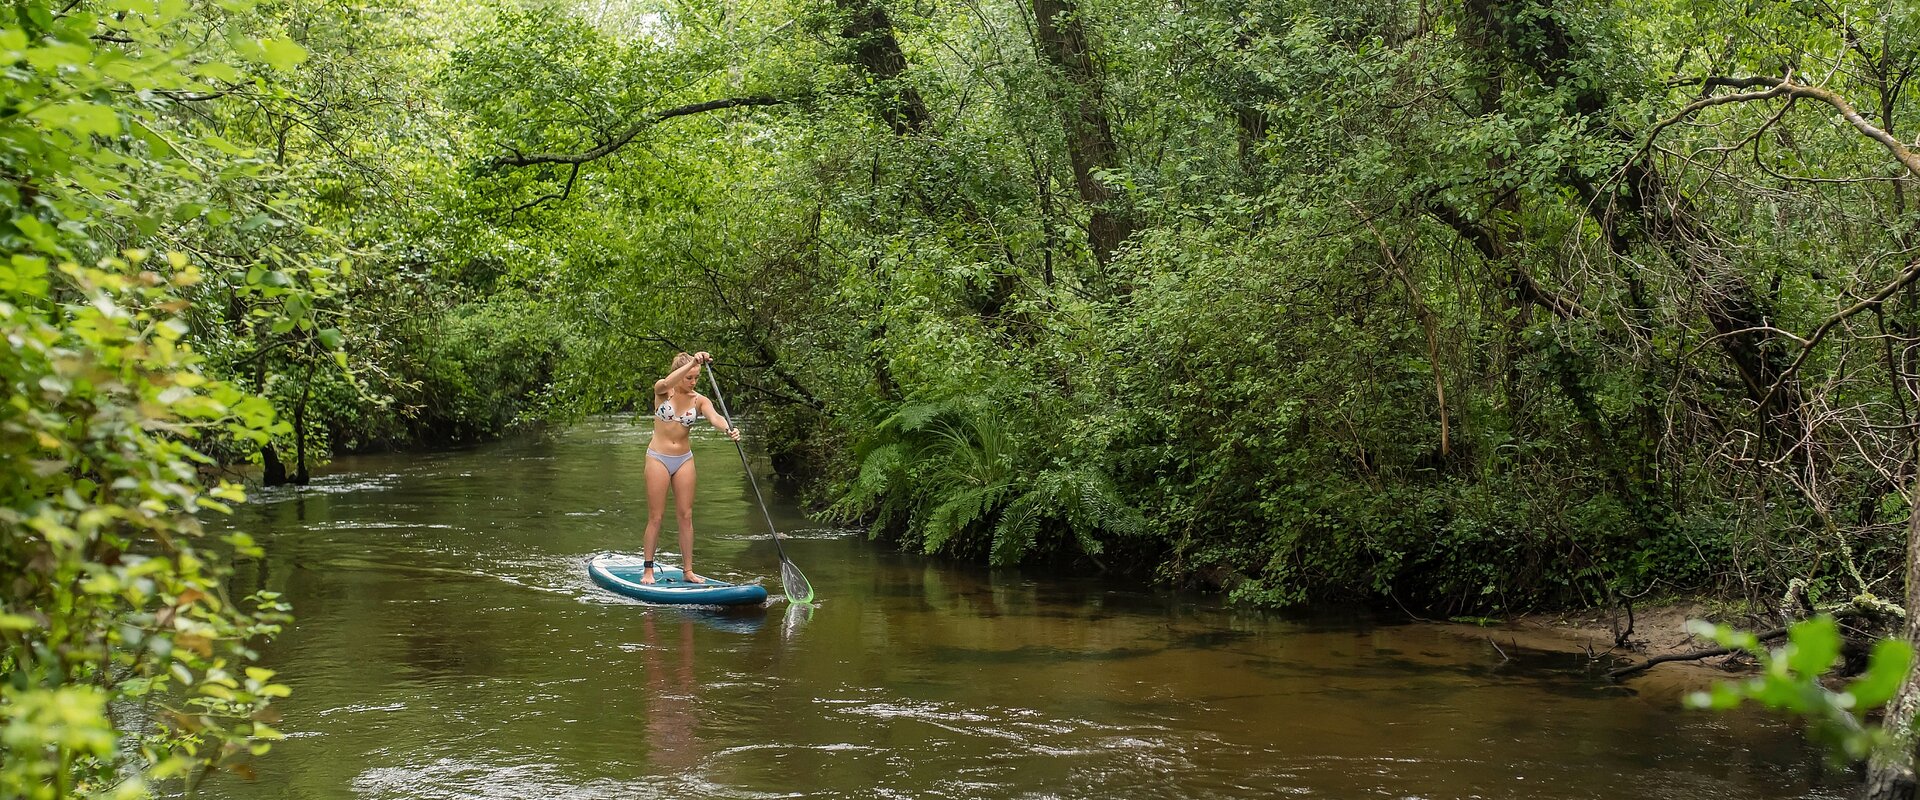 Eine schöne, athletische, junge Frau paddelt mit ihren Paddle Board auf einem kleinen Fluß durch einen Laubwald